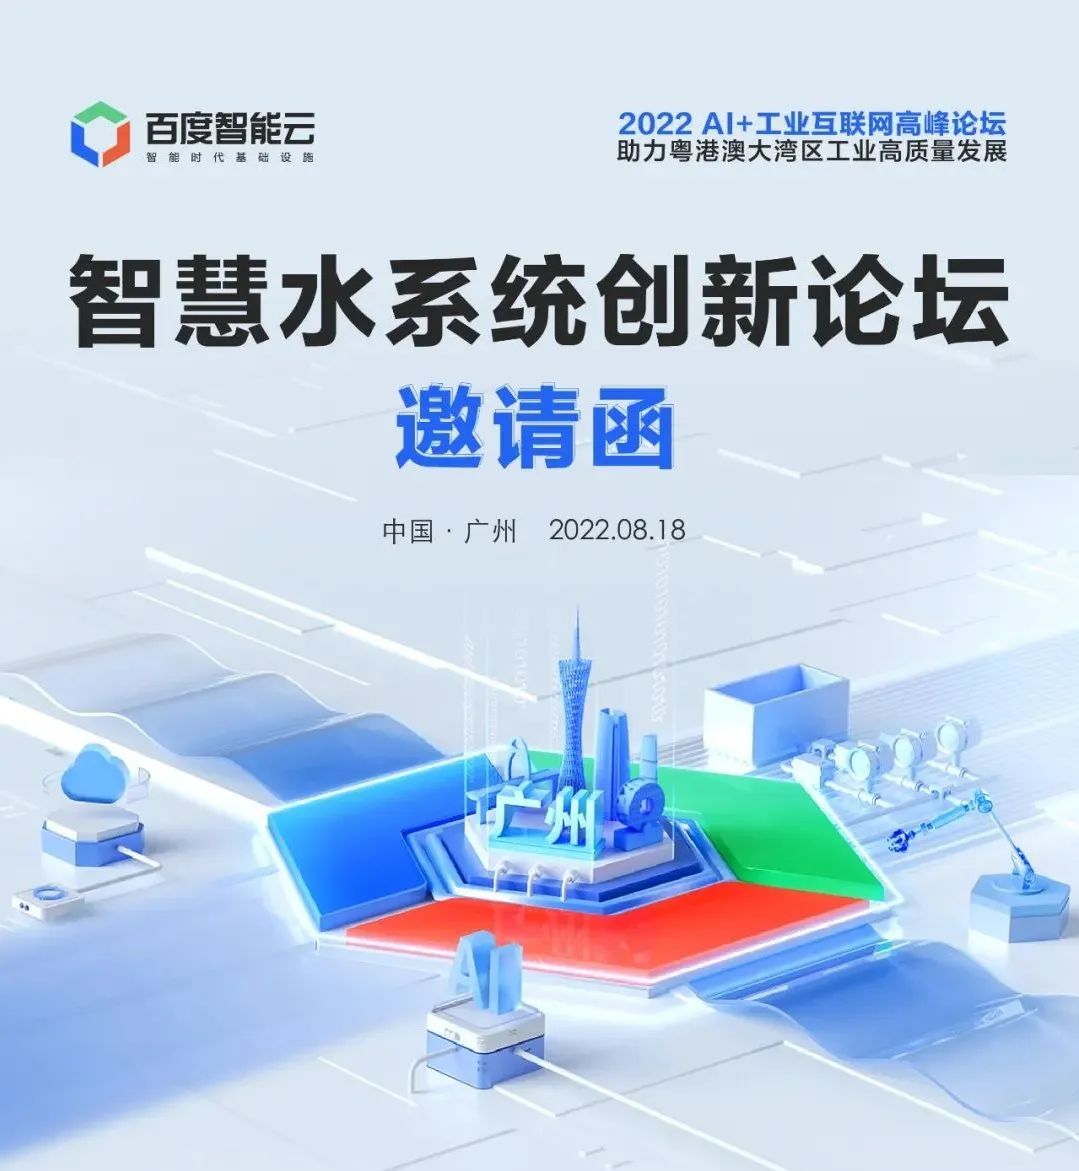 2022 AI+工业互联网高峰论坛之智慧水系统创新论坛，将于18日在广州举办